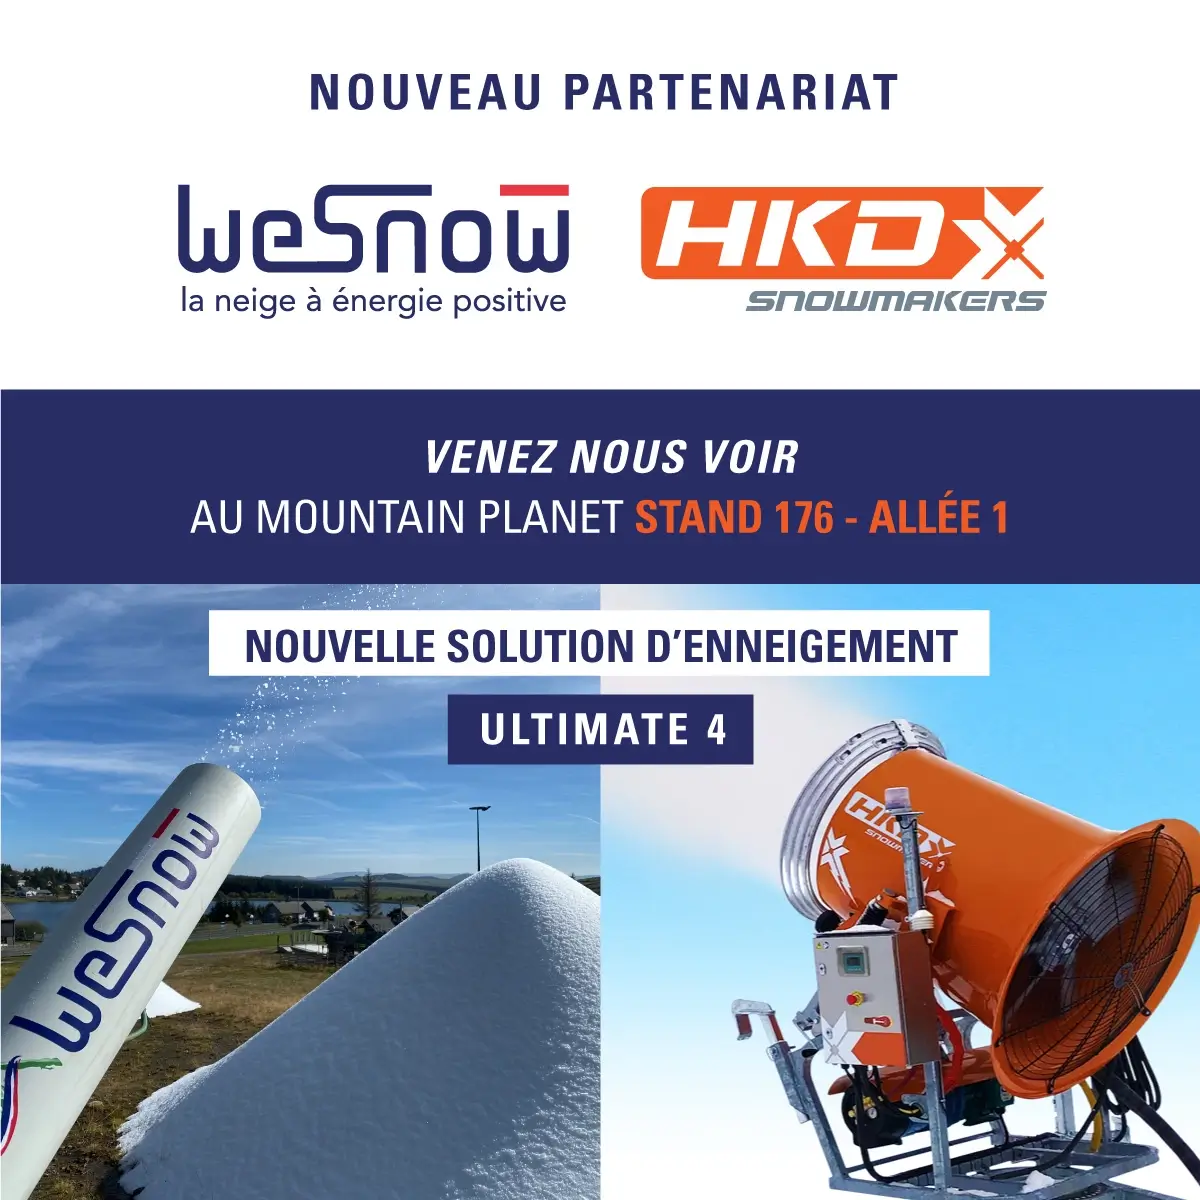 WeSnow & HDK snowmakers partenariat